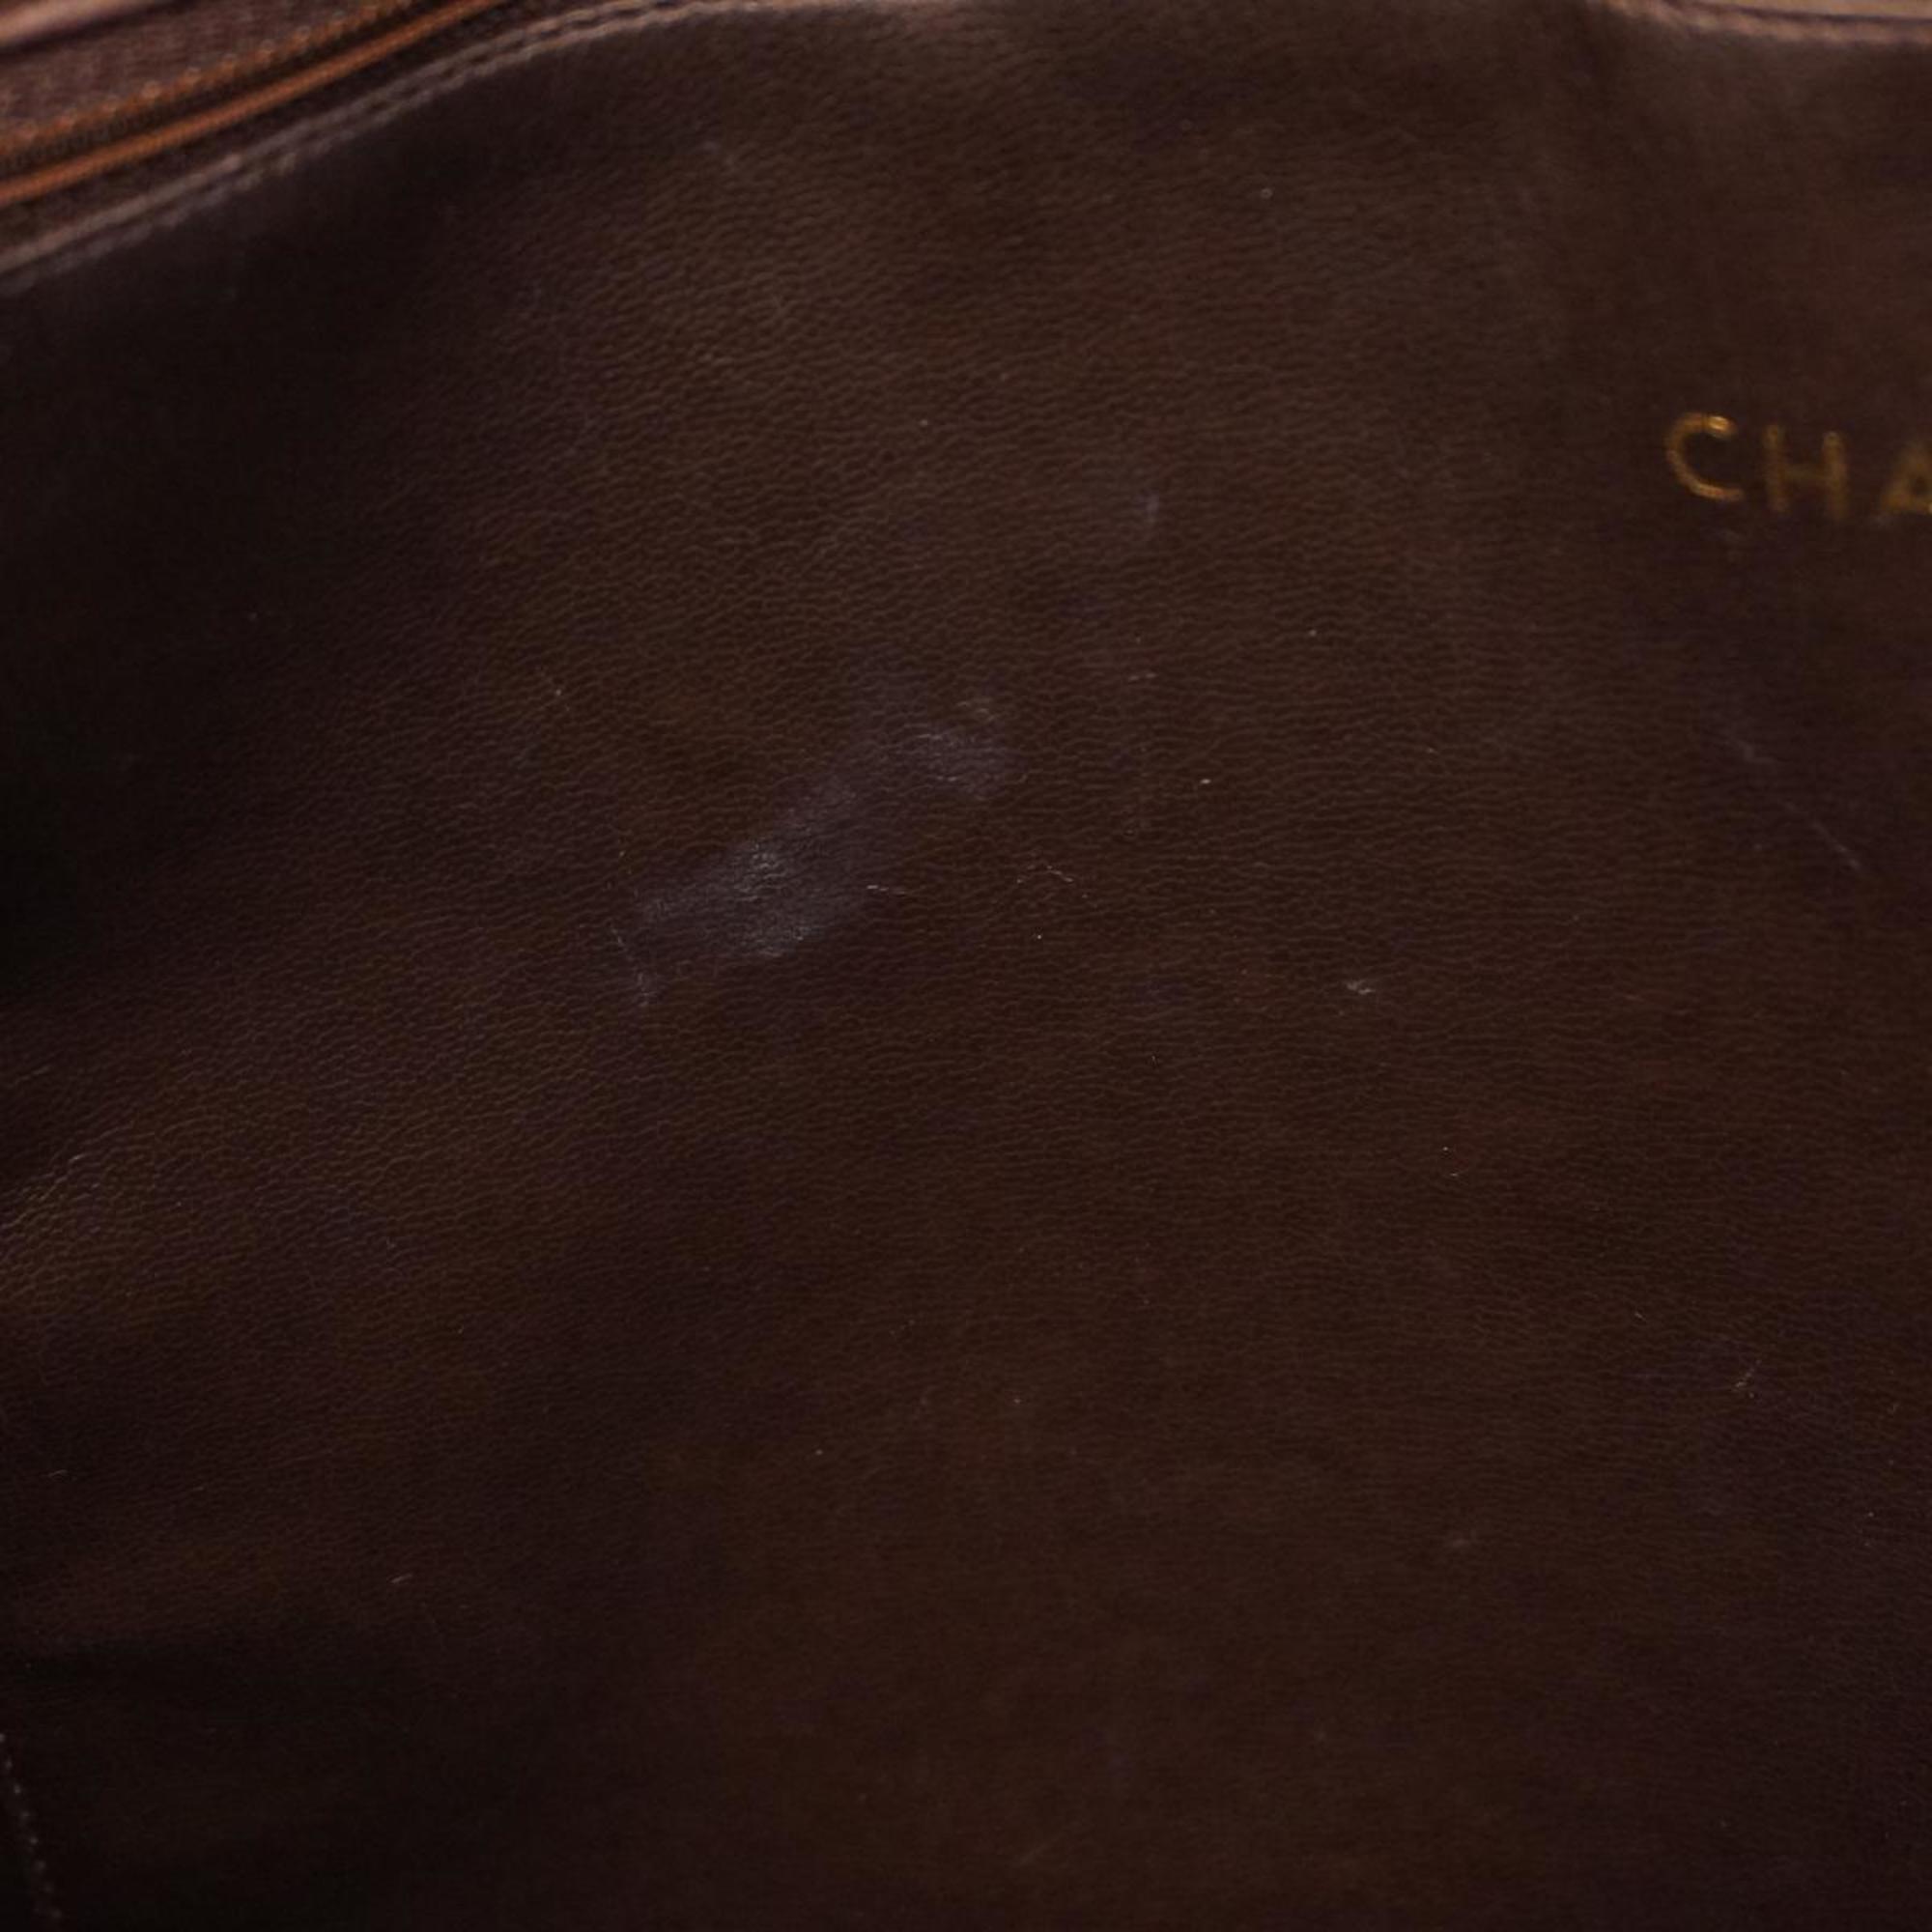 シャネル(Chanel) シャネル ショルダーバッグ マトラッセ チェーンショルダー ラムスキン ブラウン   レディース